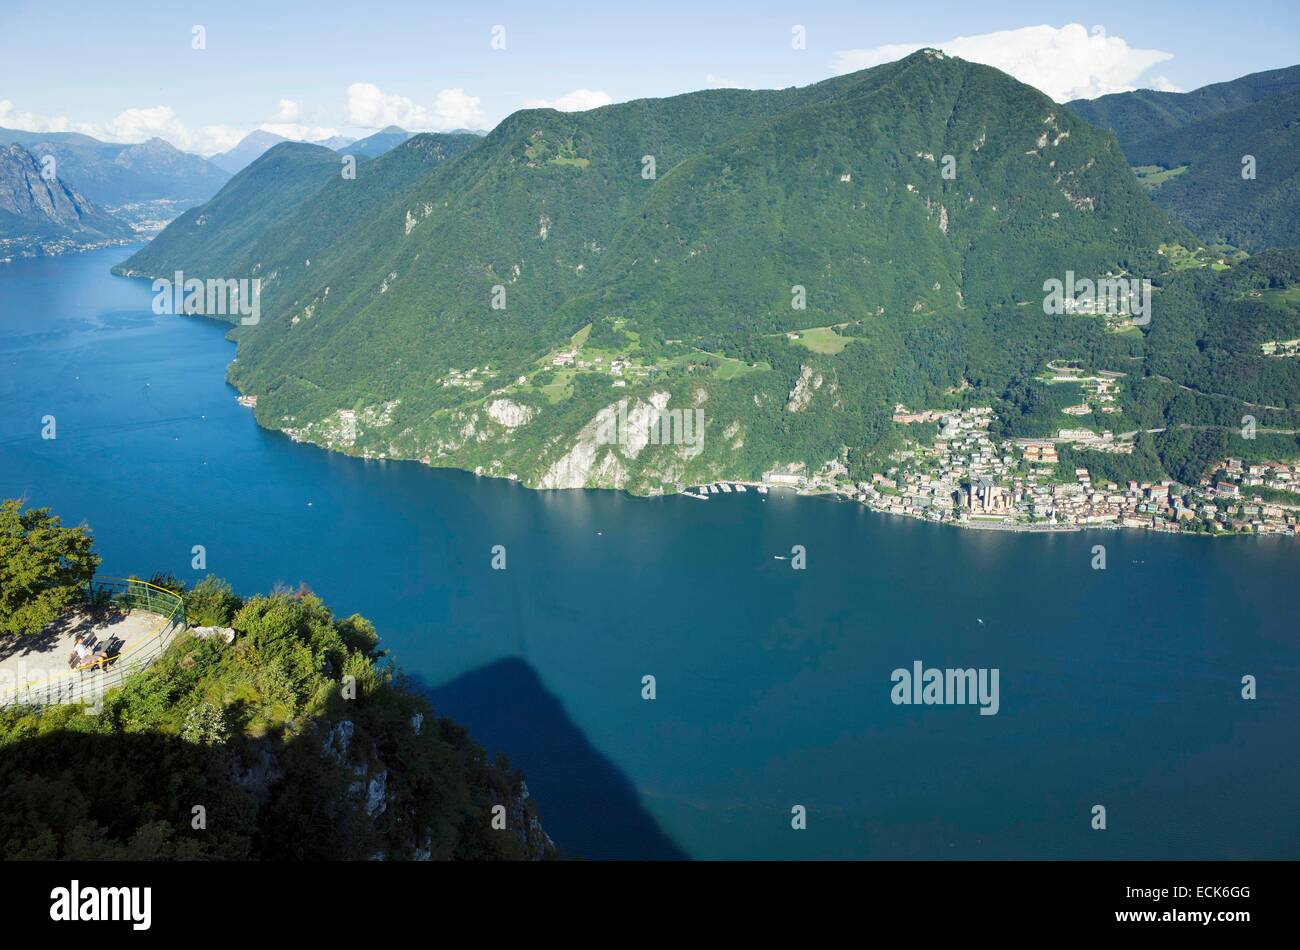 La Svizzera del Canton Ticino, Lugano, monte San Salvatore offre un panorama unico sul lago e la città Foto Stock